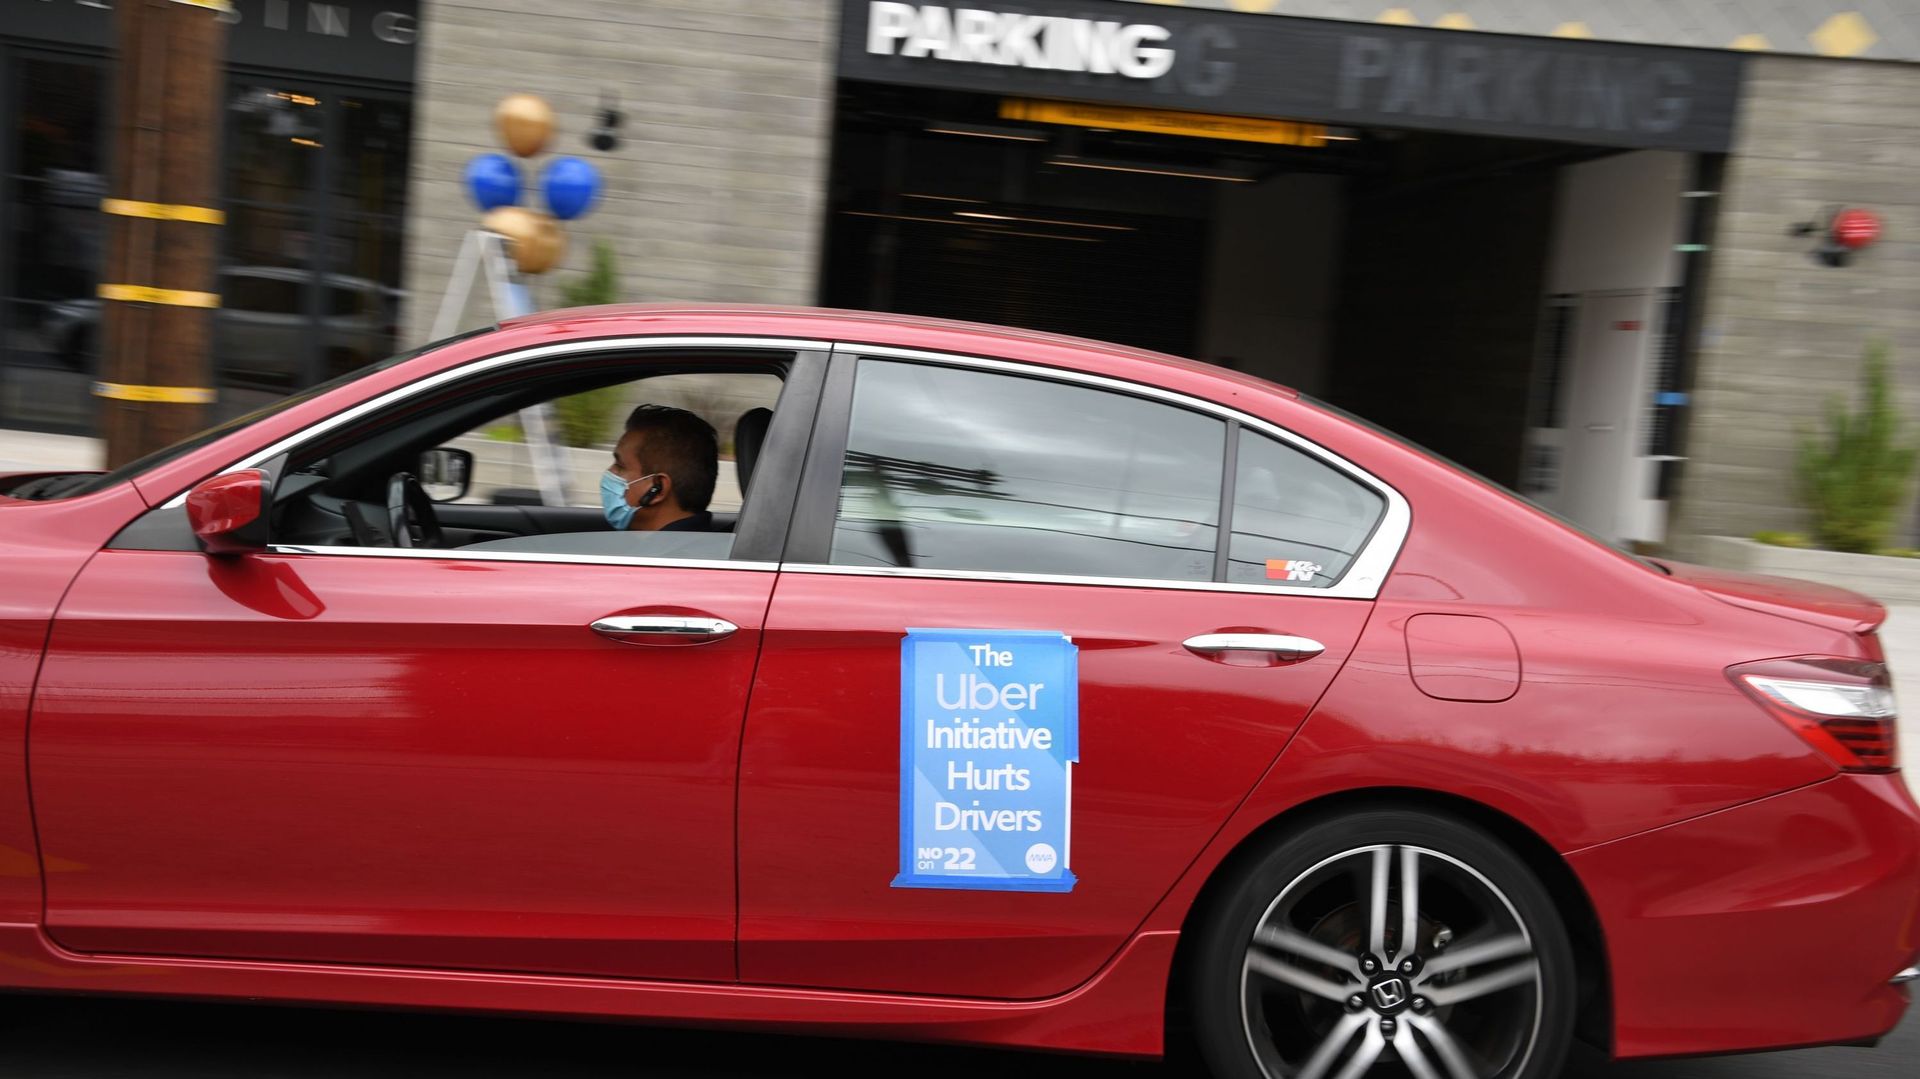 Le procès de la Fédération Belge des Taxis contre Uber débute vendredi devant la cour d’appel de Bruxelles